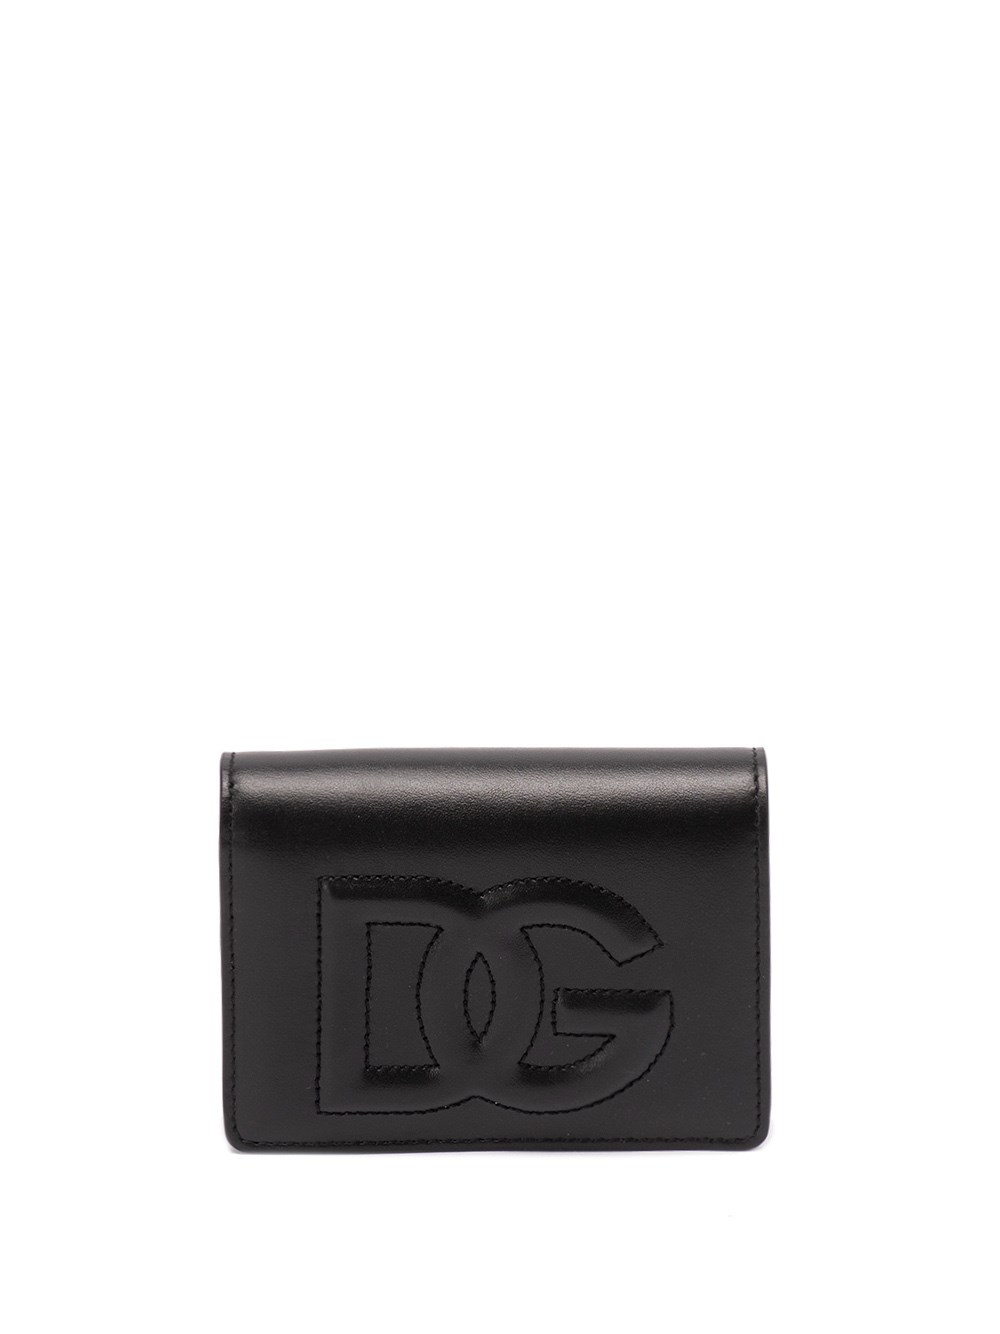 Dolce & Gabbana Wallet With Dg Logo In Nero